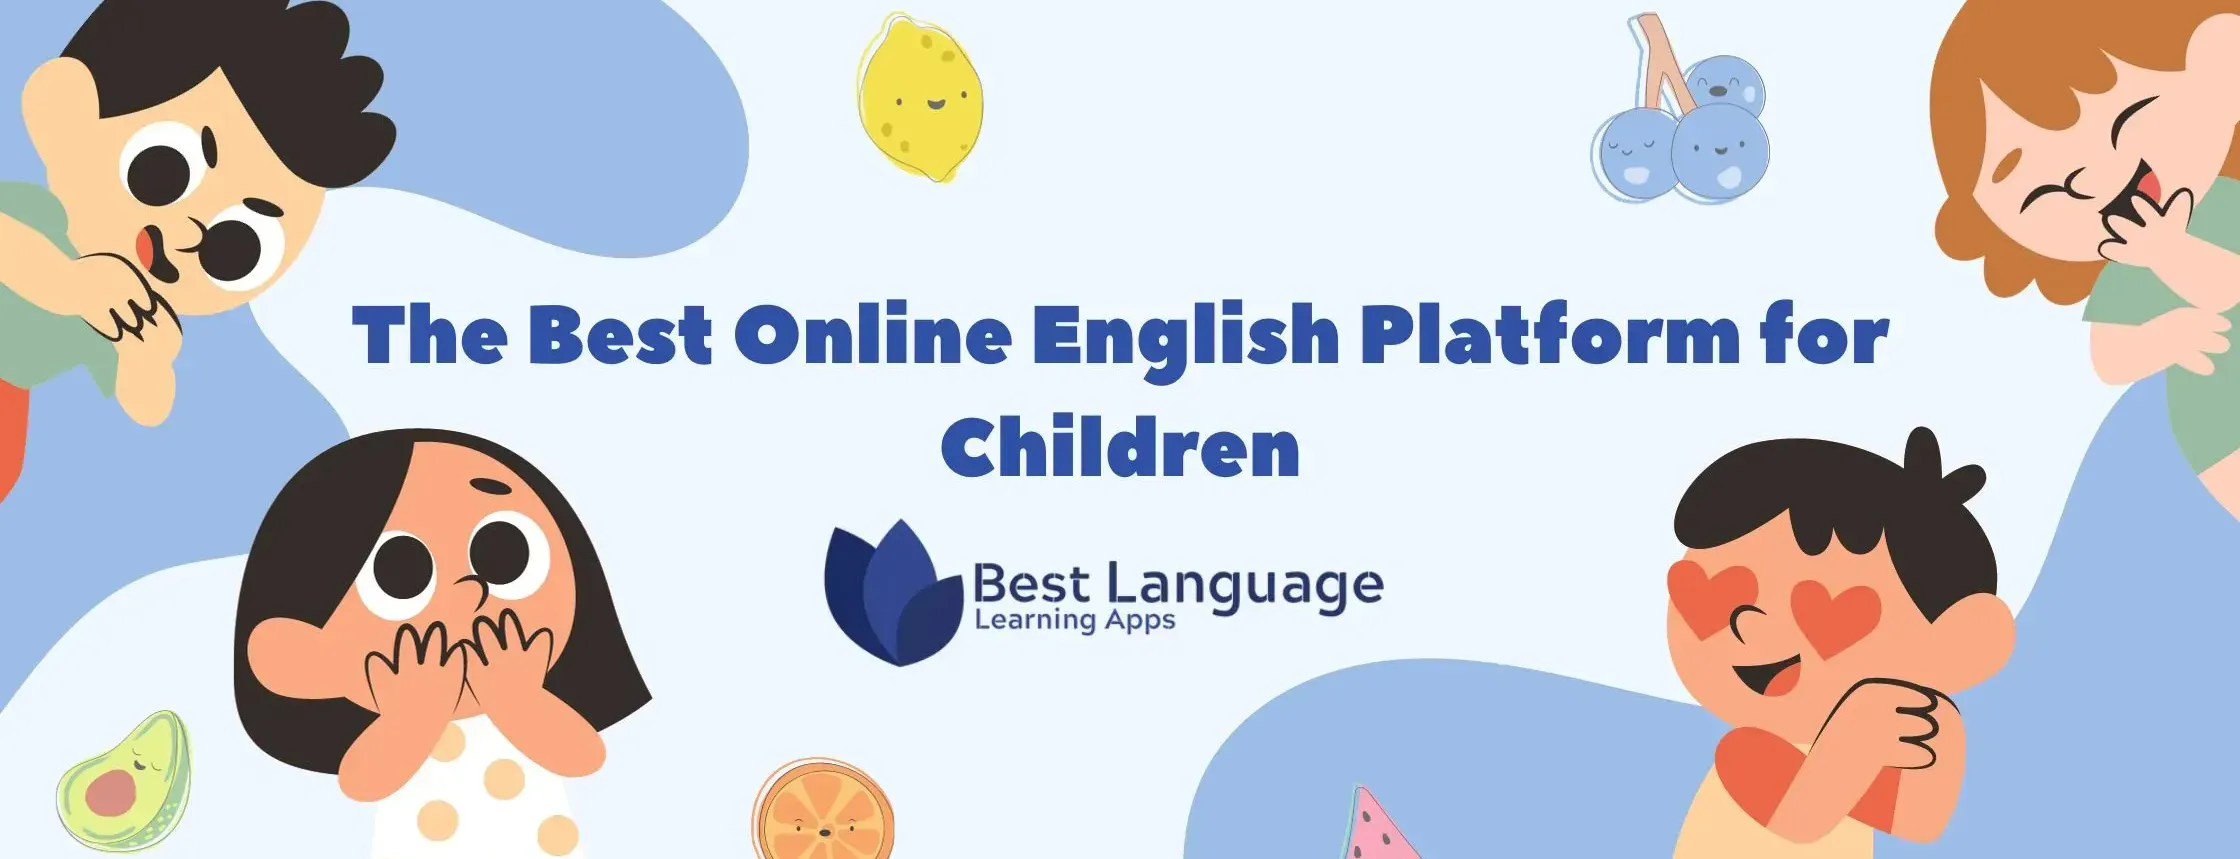 English learning for children, children's English learning platform, the best courses for children